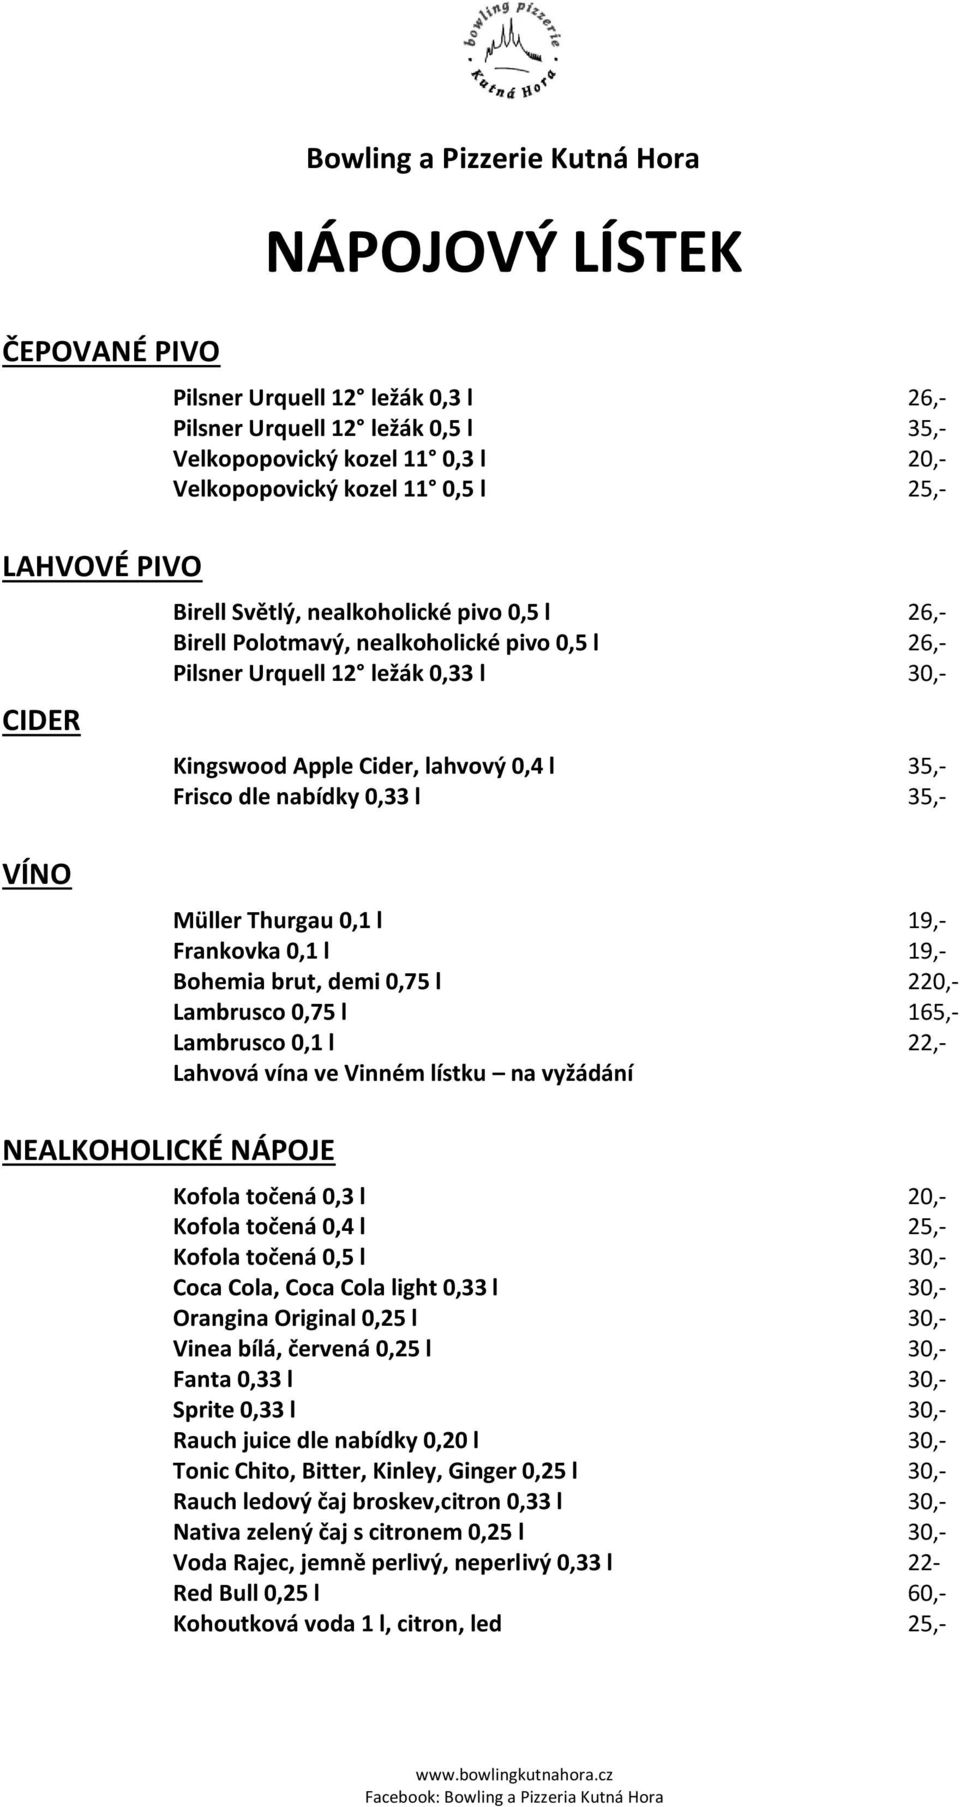 l 35,- Frisco dle nabídky 0,33 l 35,- VÍNO Müller Thurgau 0,1 l 19,- Frankovka 0,1 l 19,- Bohemia brut, demi 0,75 l 220,- Lambrusco 0,75 l 165,- Lambrusco 0,1 l 22,- Lahvová vína ve Vinném lístku na